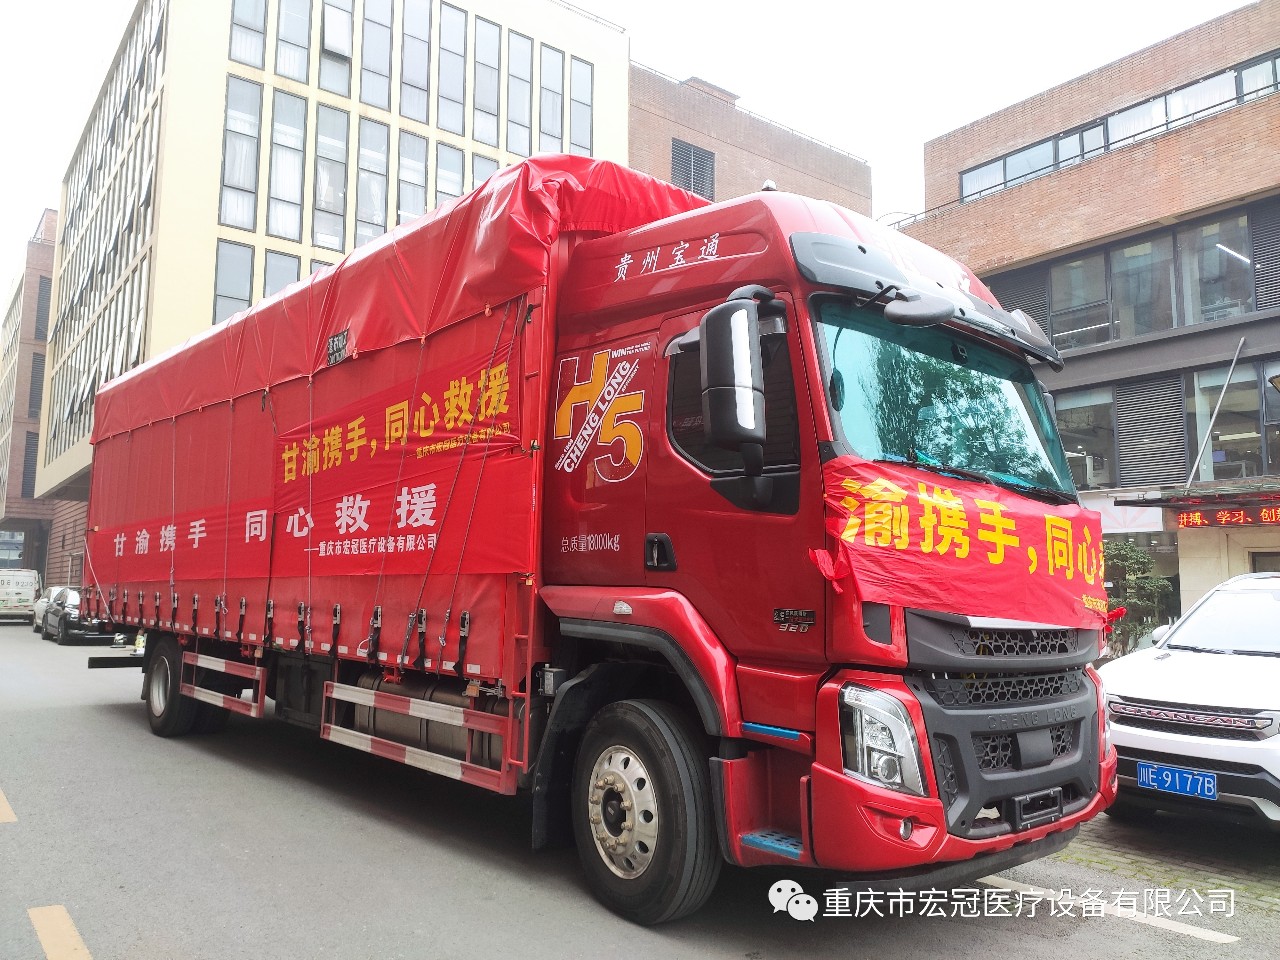 Ang Chongqing Hongguan Medical Equipment Co., Ltd. midonar og kapin sa 700,000 ka yuan sa mga medikal nga suplay aron suportahan ang mga dapit nga adunay katalagman sa Gansu.